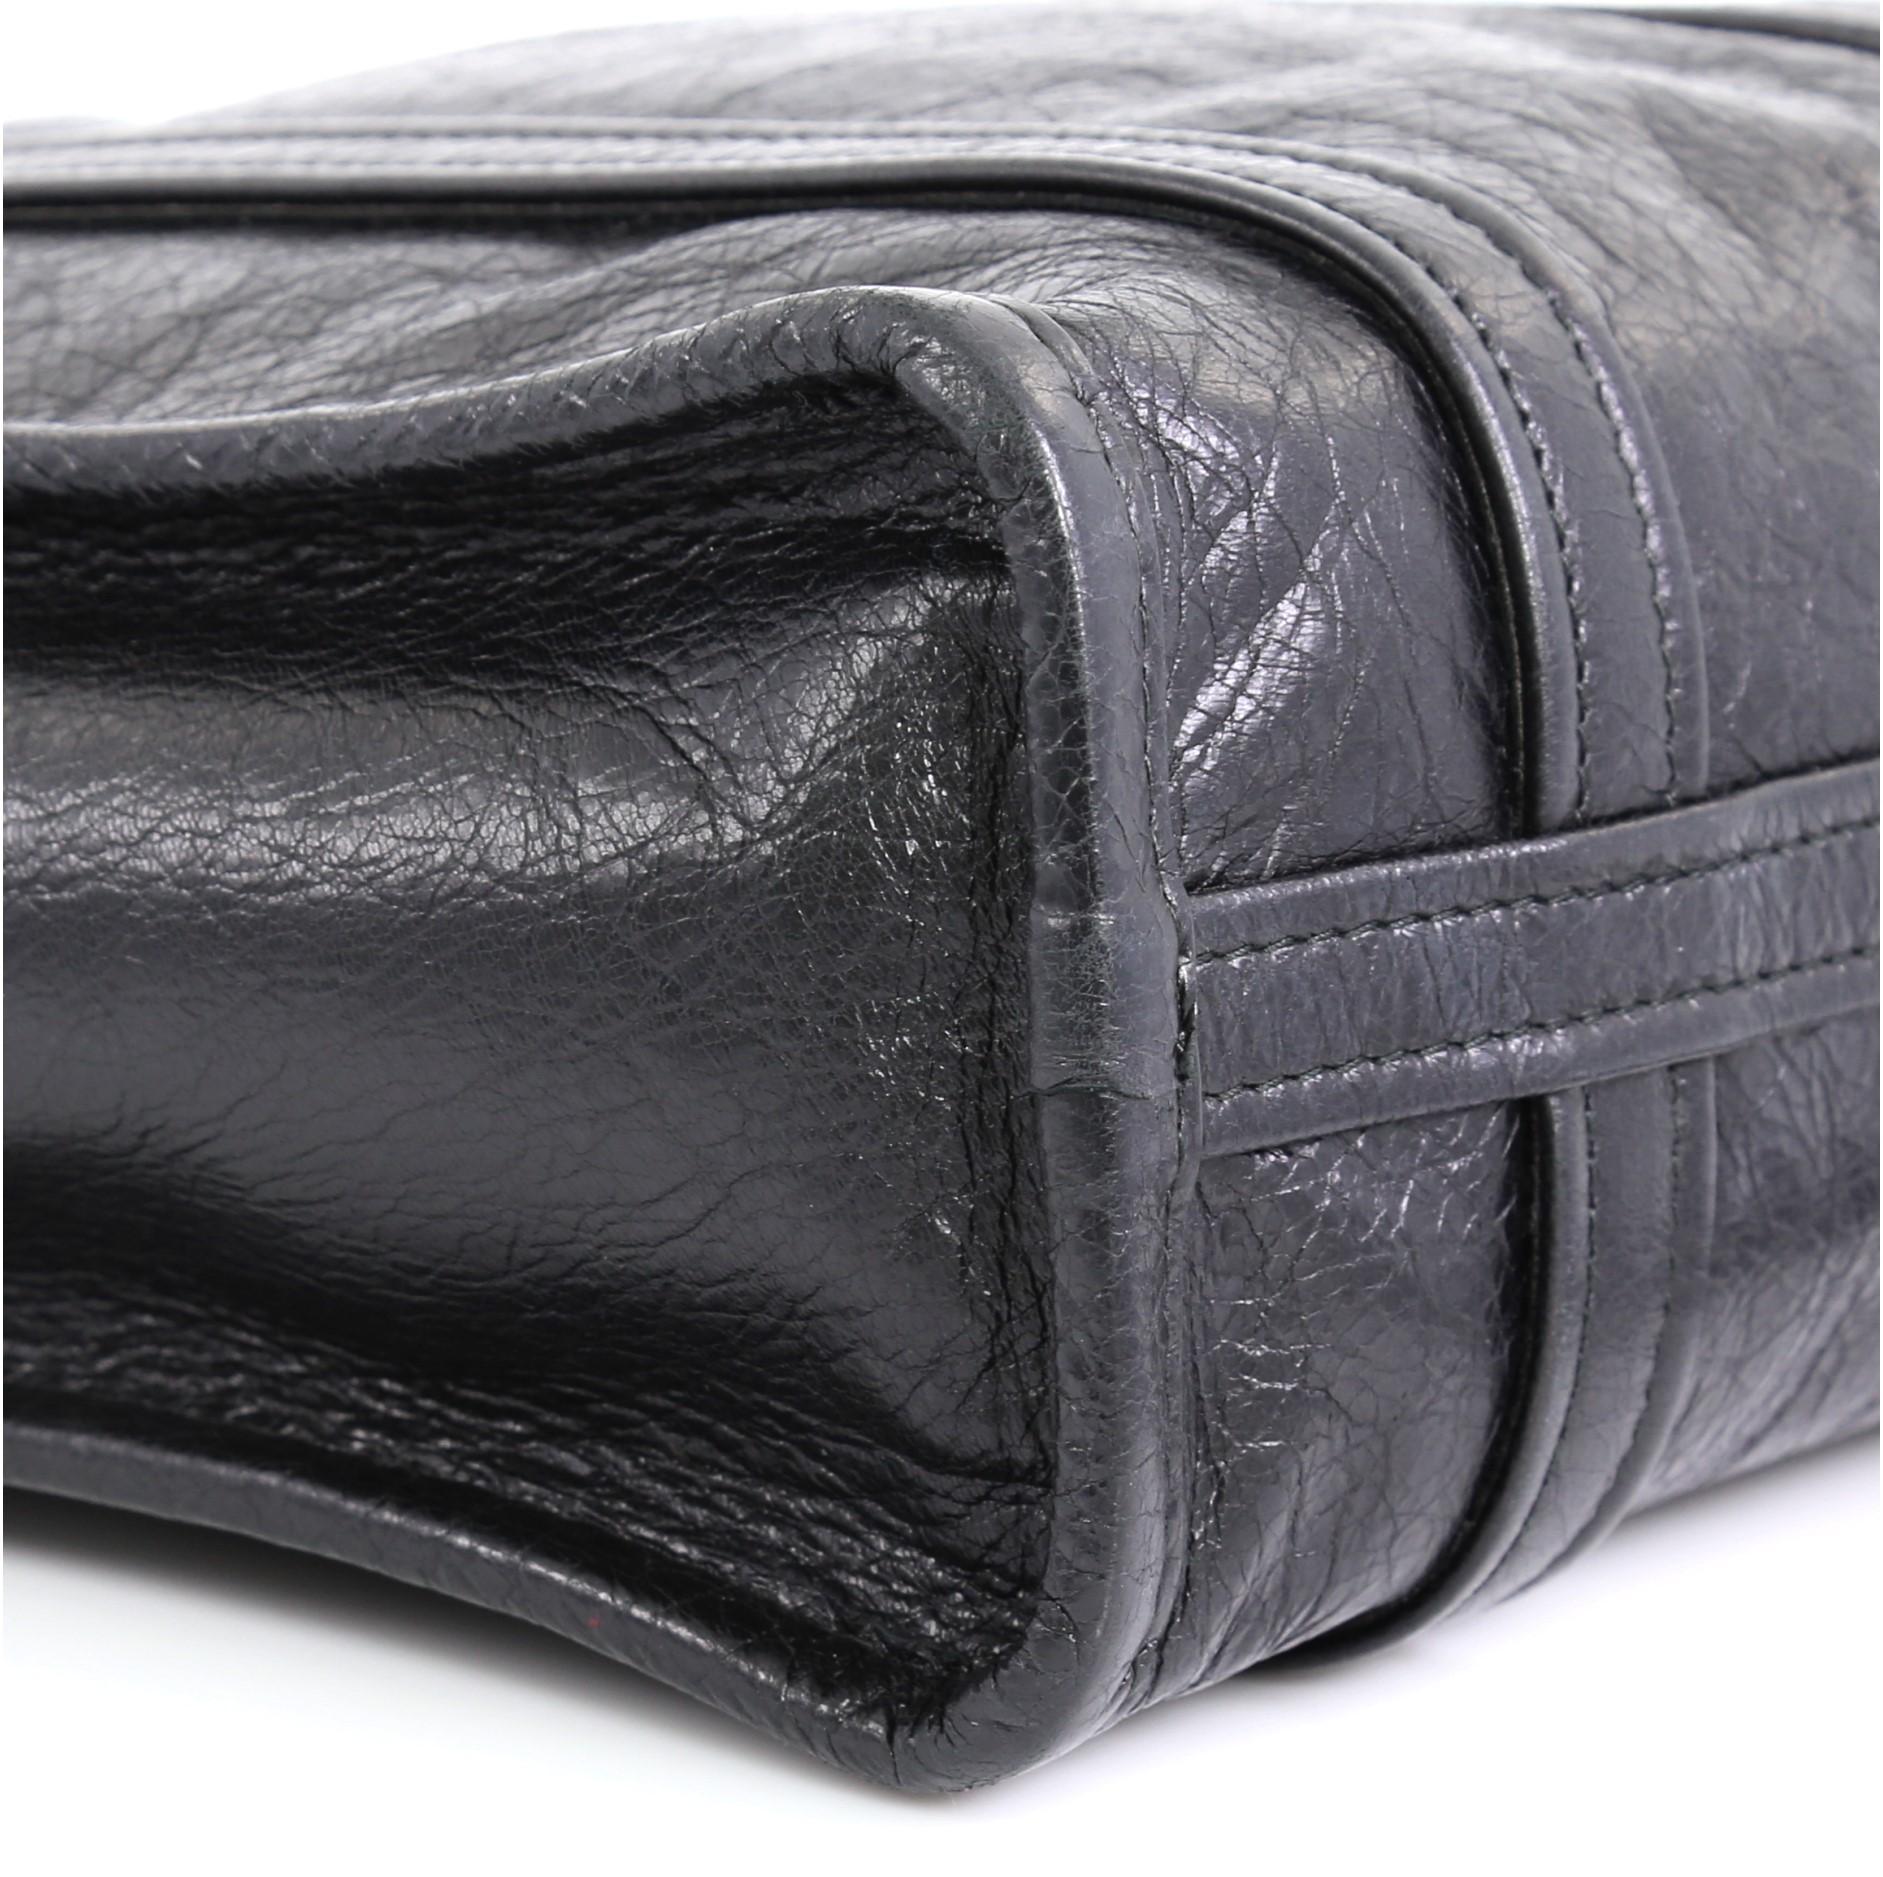 Balenciaga Bazar Convertible Tote Leather XS 1